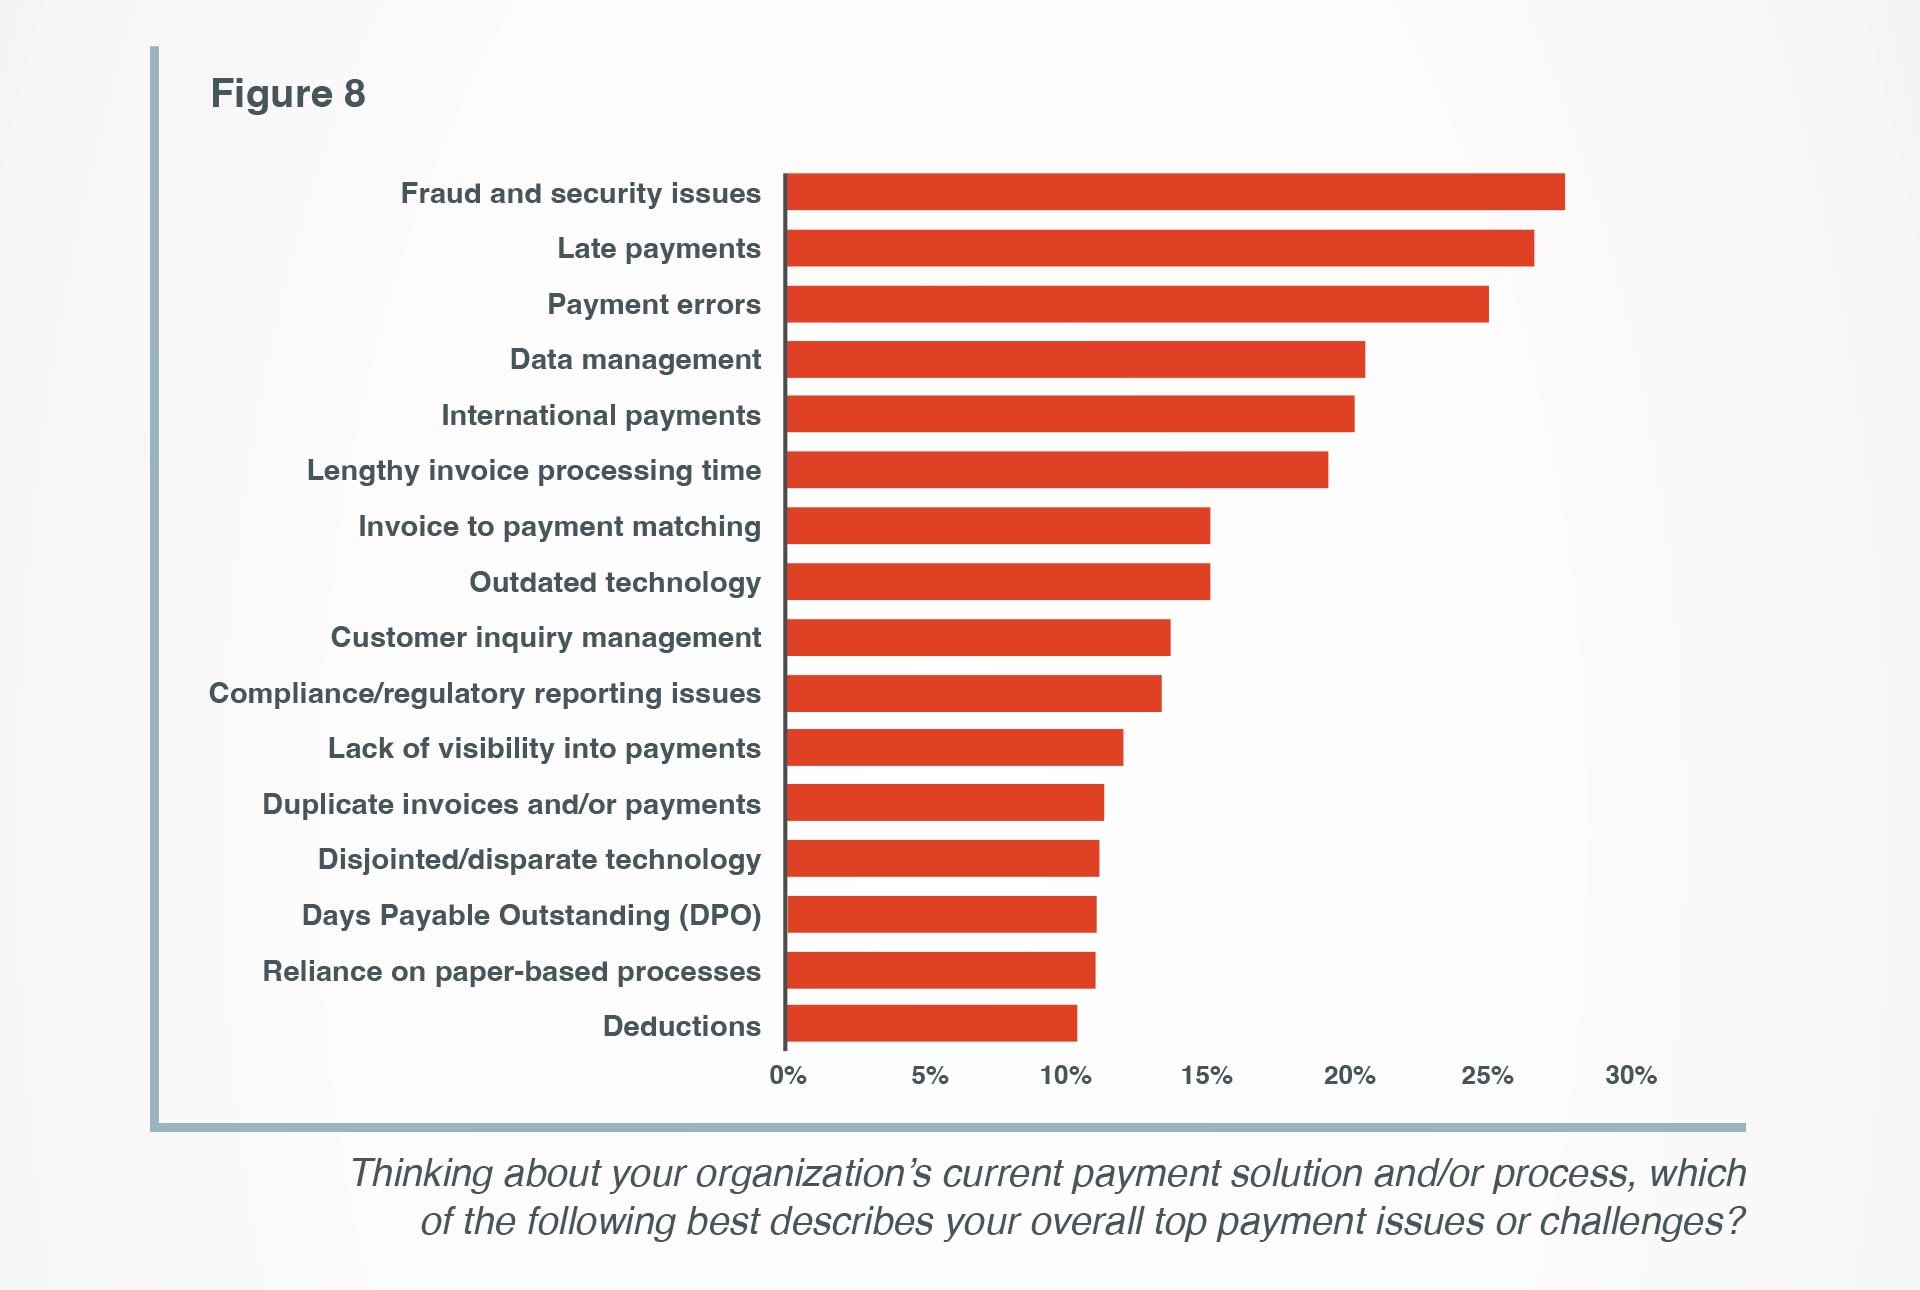 Respondents' top payment challenges